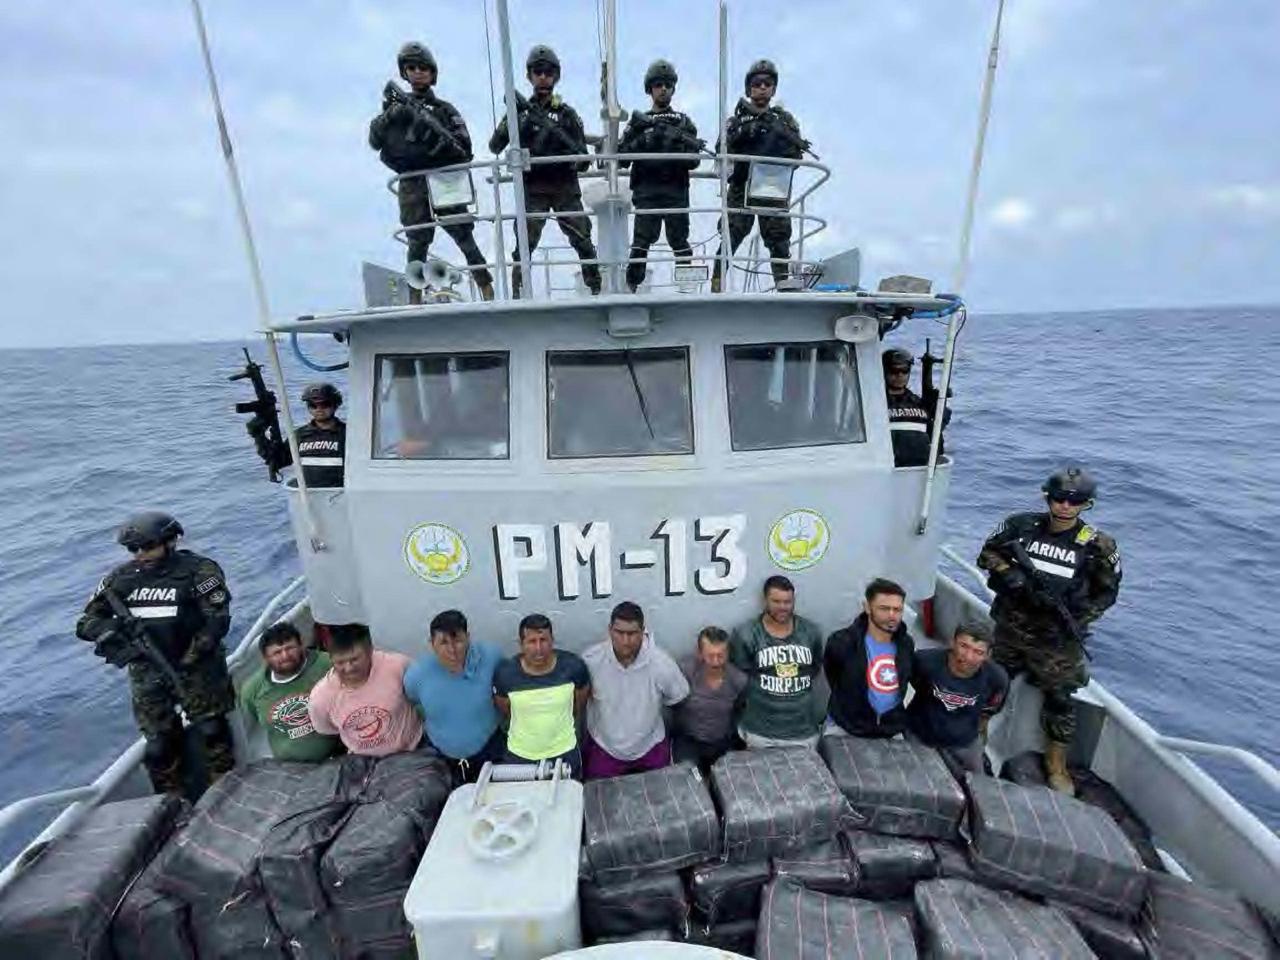 guatemaltecos capturados por trasladar droga en El Salvador